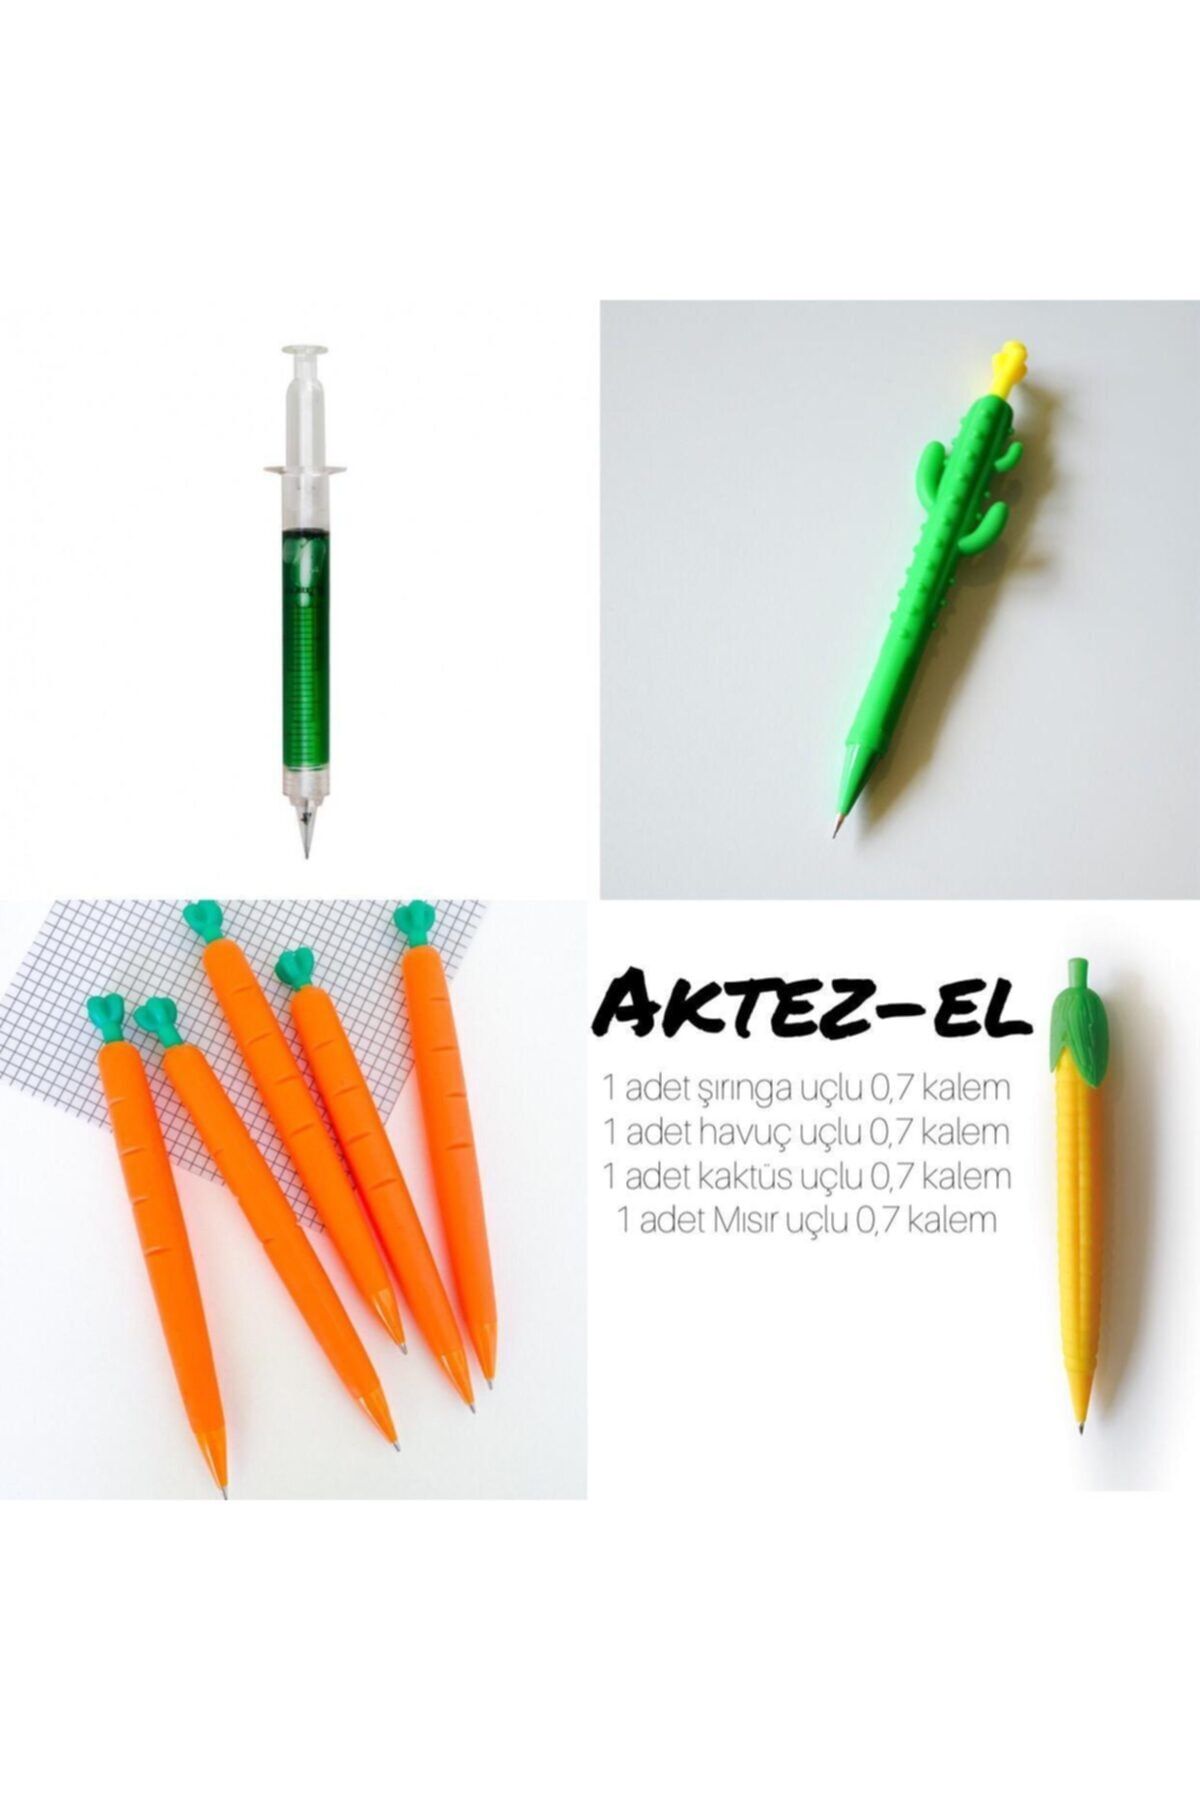 AKTEZ-EL 0,7 Versatil Şekilli Uçlu Kalemler - Şırınga, Havuç, Kaktüs , Mısır